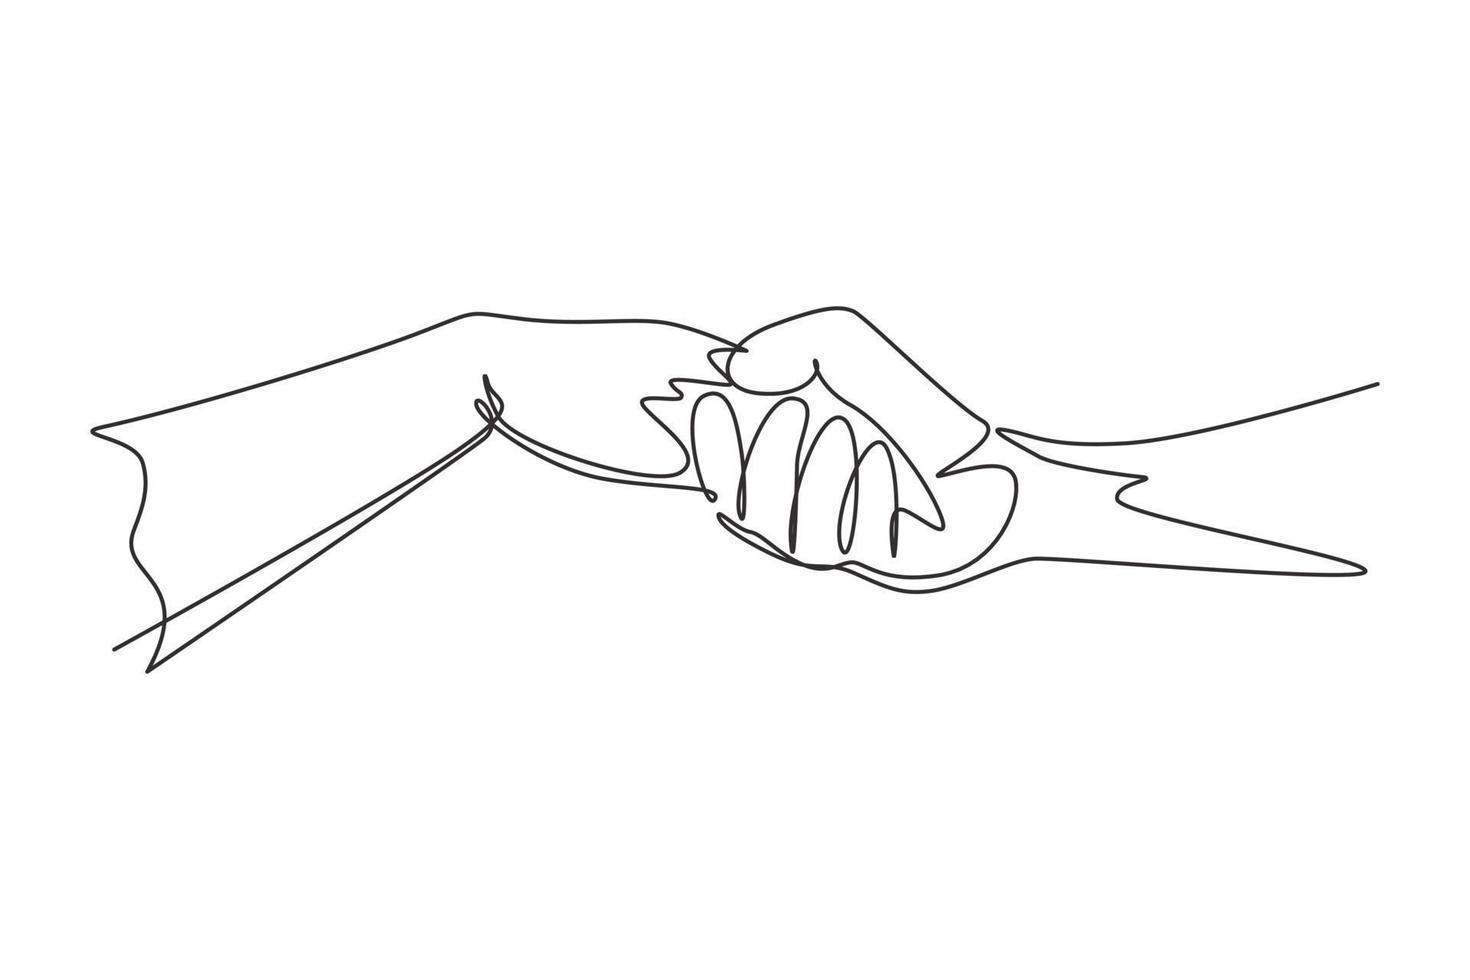 Single-Line-Zeichnung von Mann und Frau, die ihre Hände halten. Zeichen oder Symbol der Liebe, Fürsorge, Freundschaft. Kommunikation mit Handgesten. moderne durchgehende Linie zeichnen Design-Grafik-Vektor-Illustration vektor